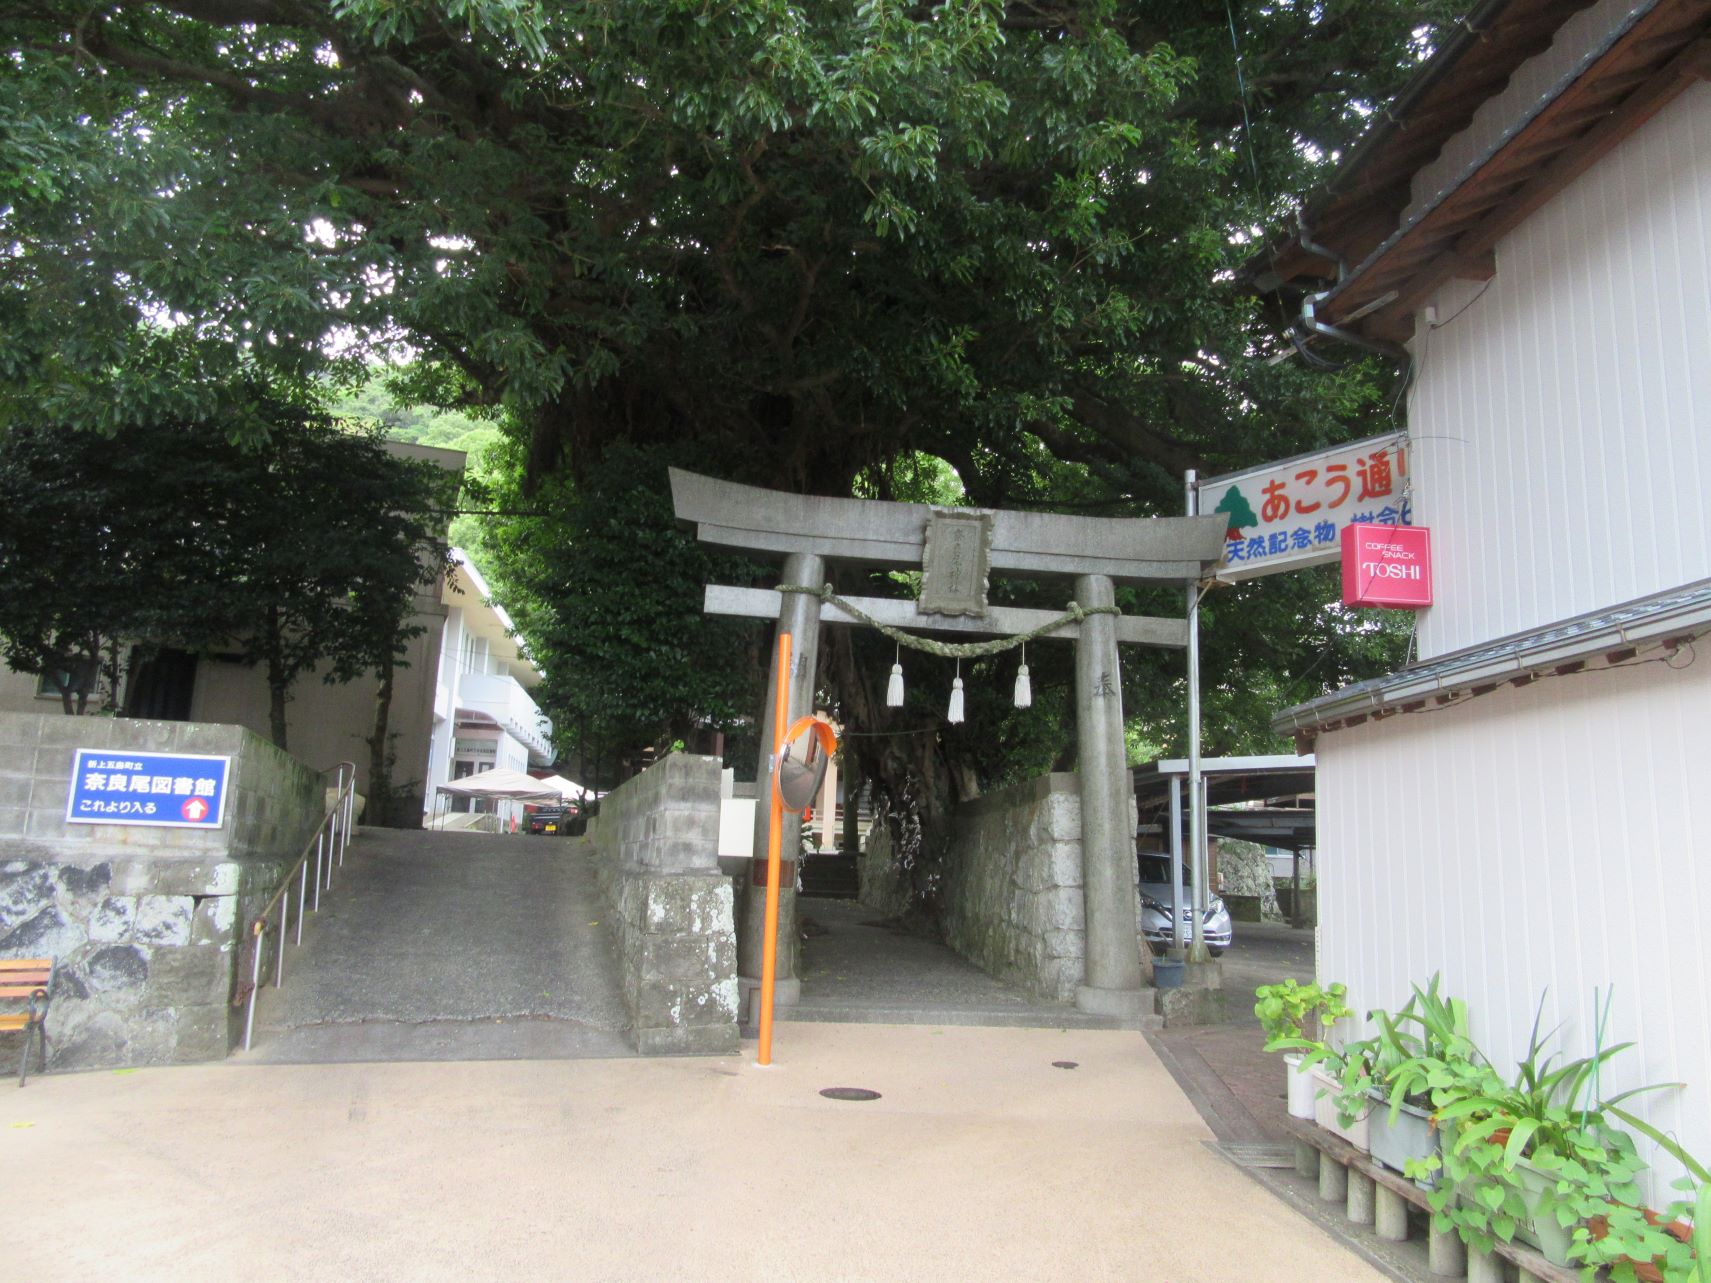 長崎県南松浦郡新上五島町の奈良尾神社の鳥居。